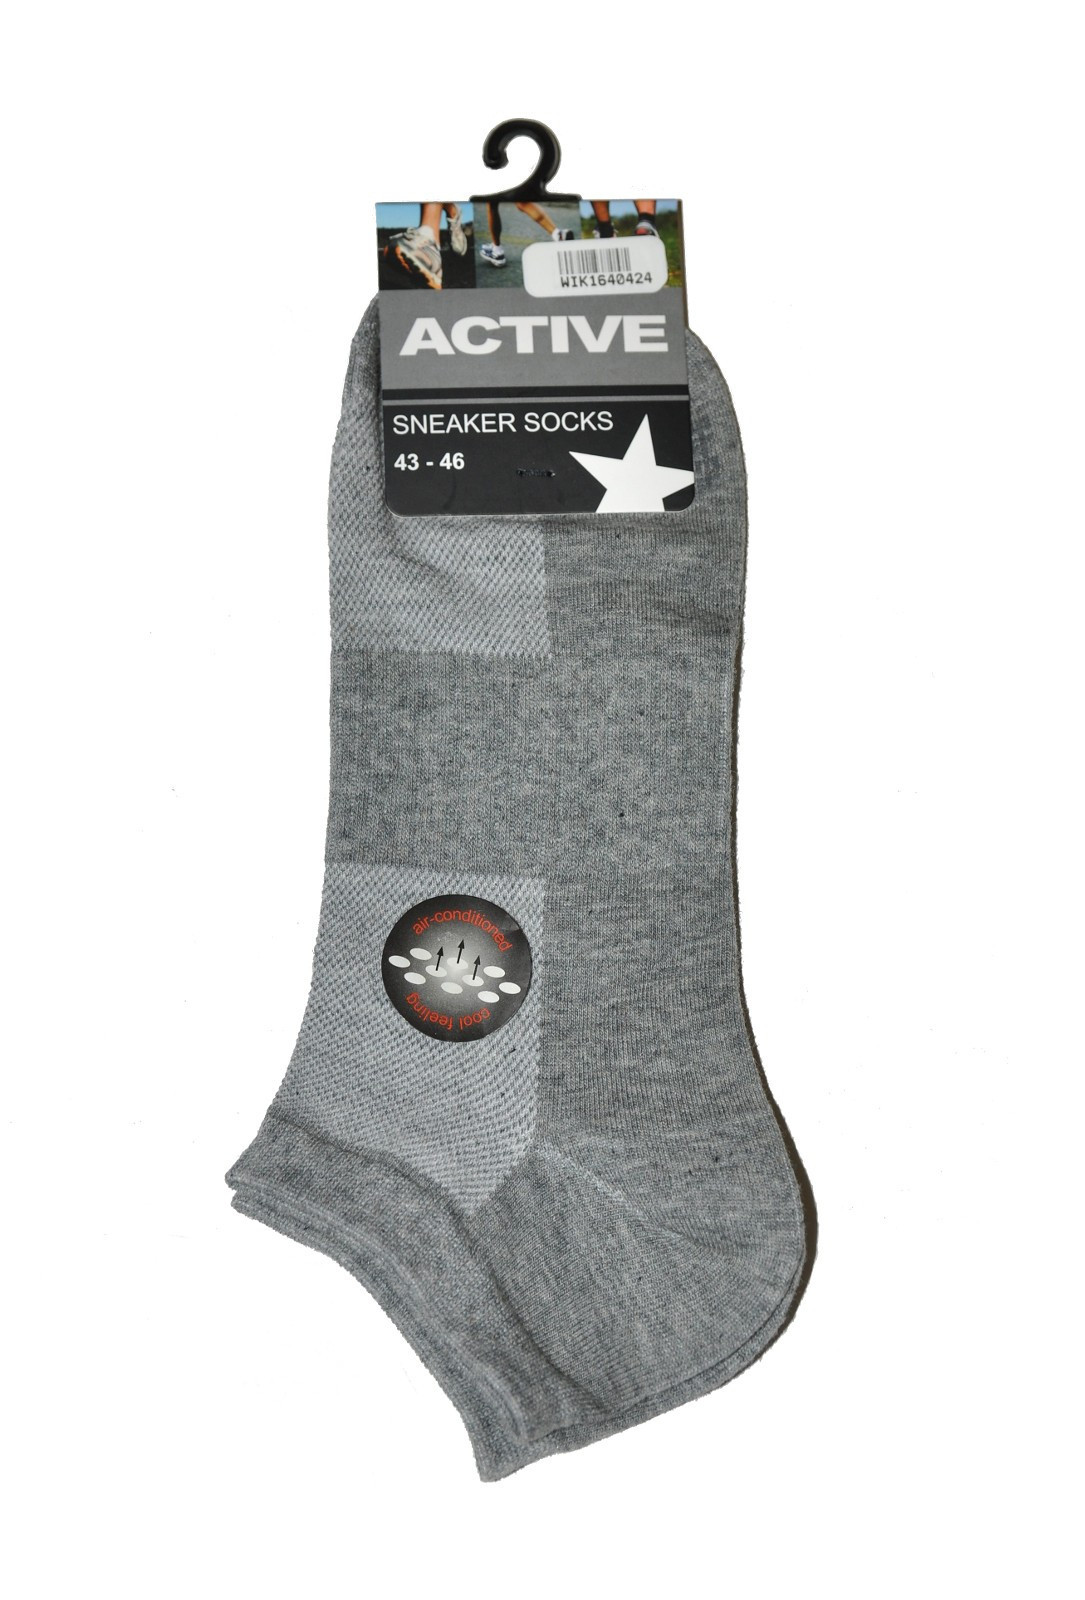 Pánské ponožky WiK 16404 Active 39-46 bílá 39-42